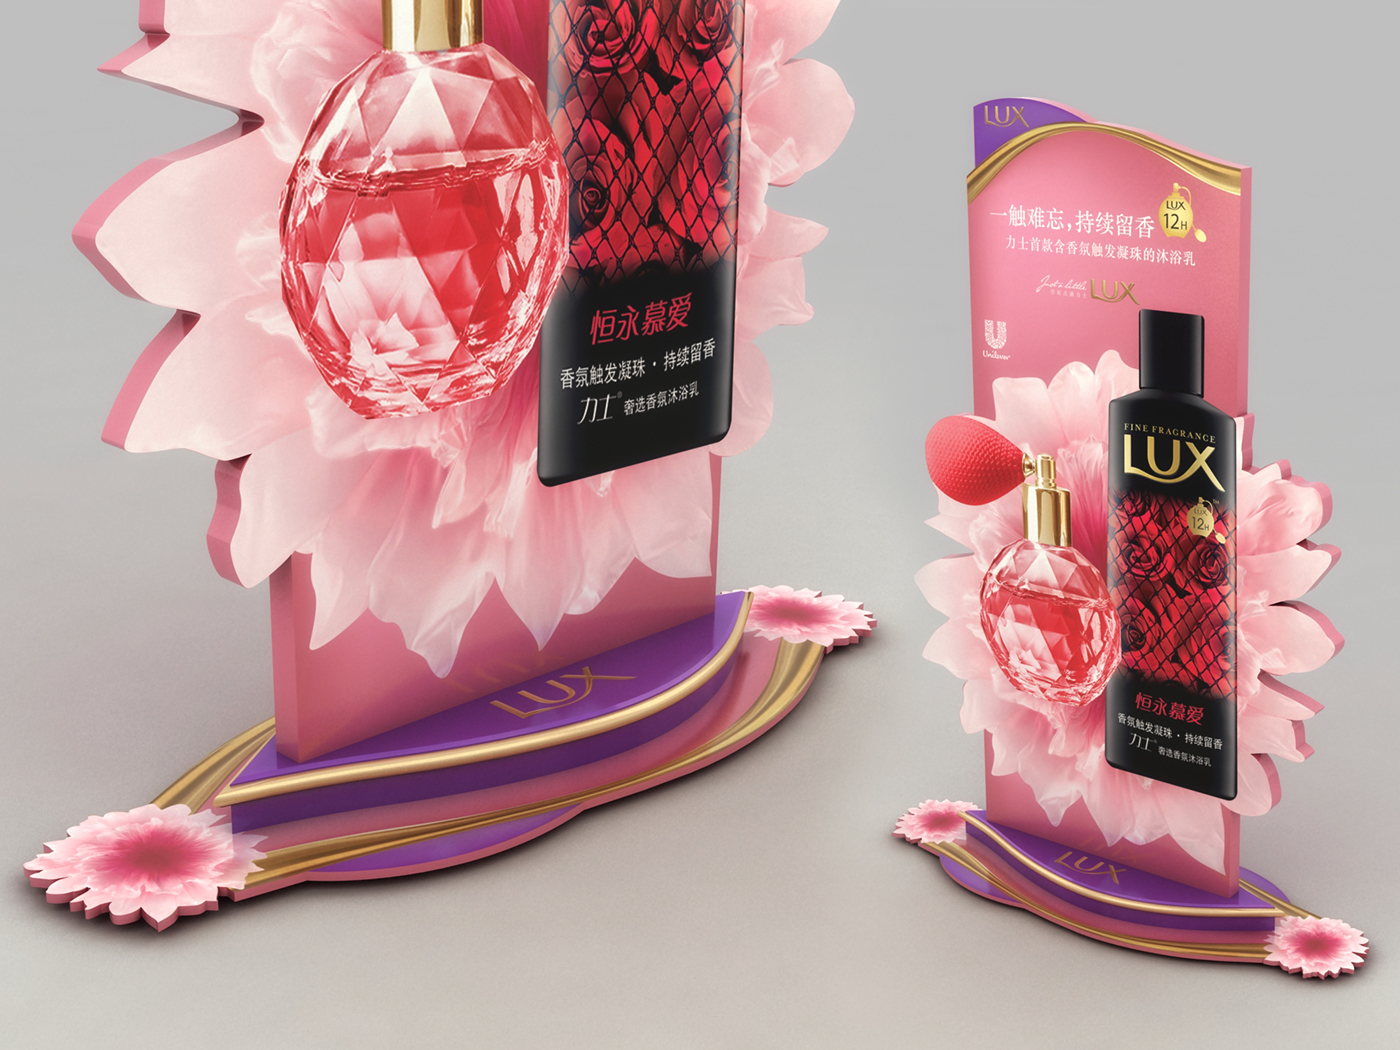 Lux posm pop Display merchandising